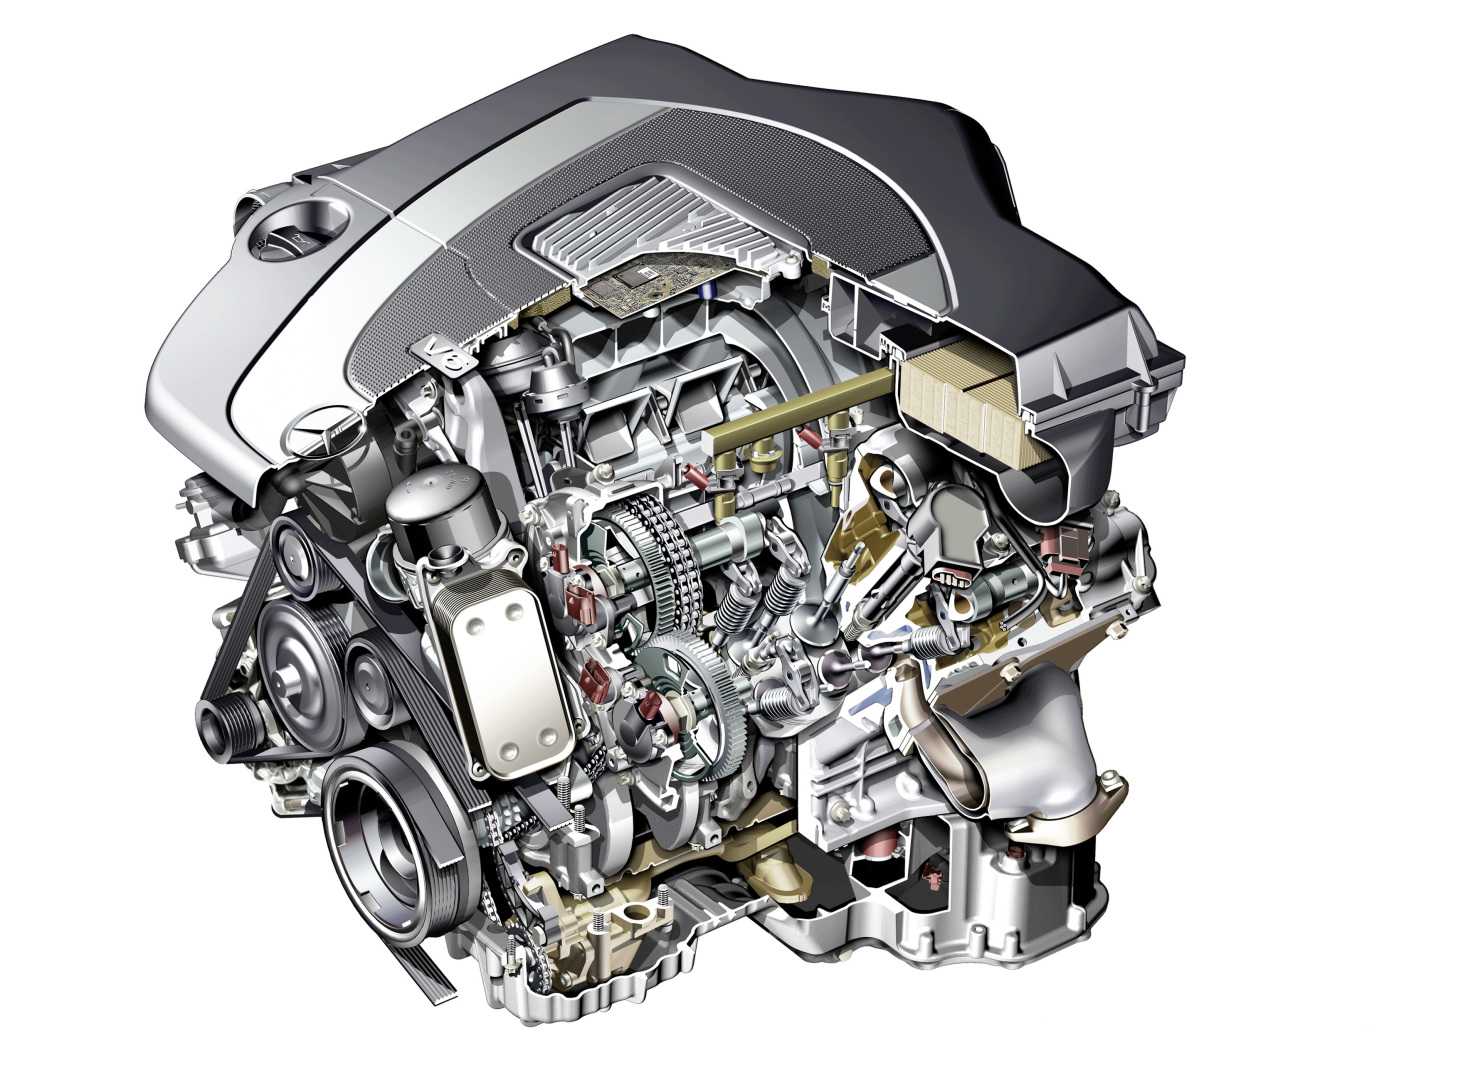 Основные характеристики двигателя М272 Е25 Обслуживание силовых агрегатов Разновидности моторов и их применяемость Неисправности и пути решения